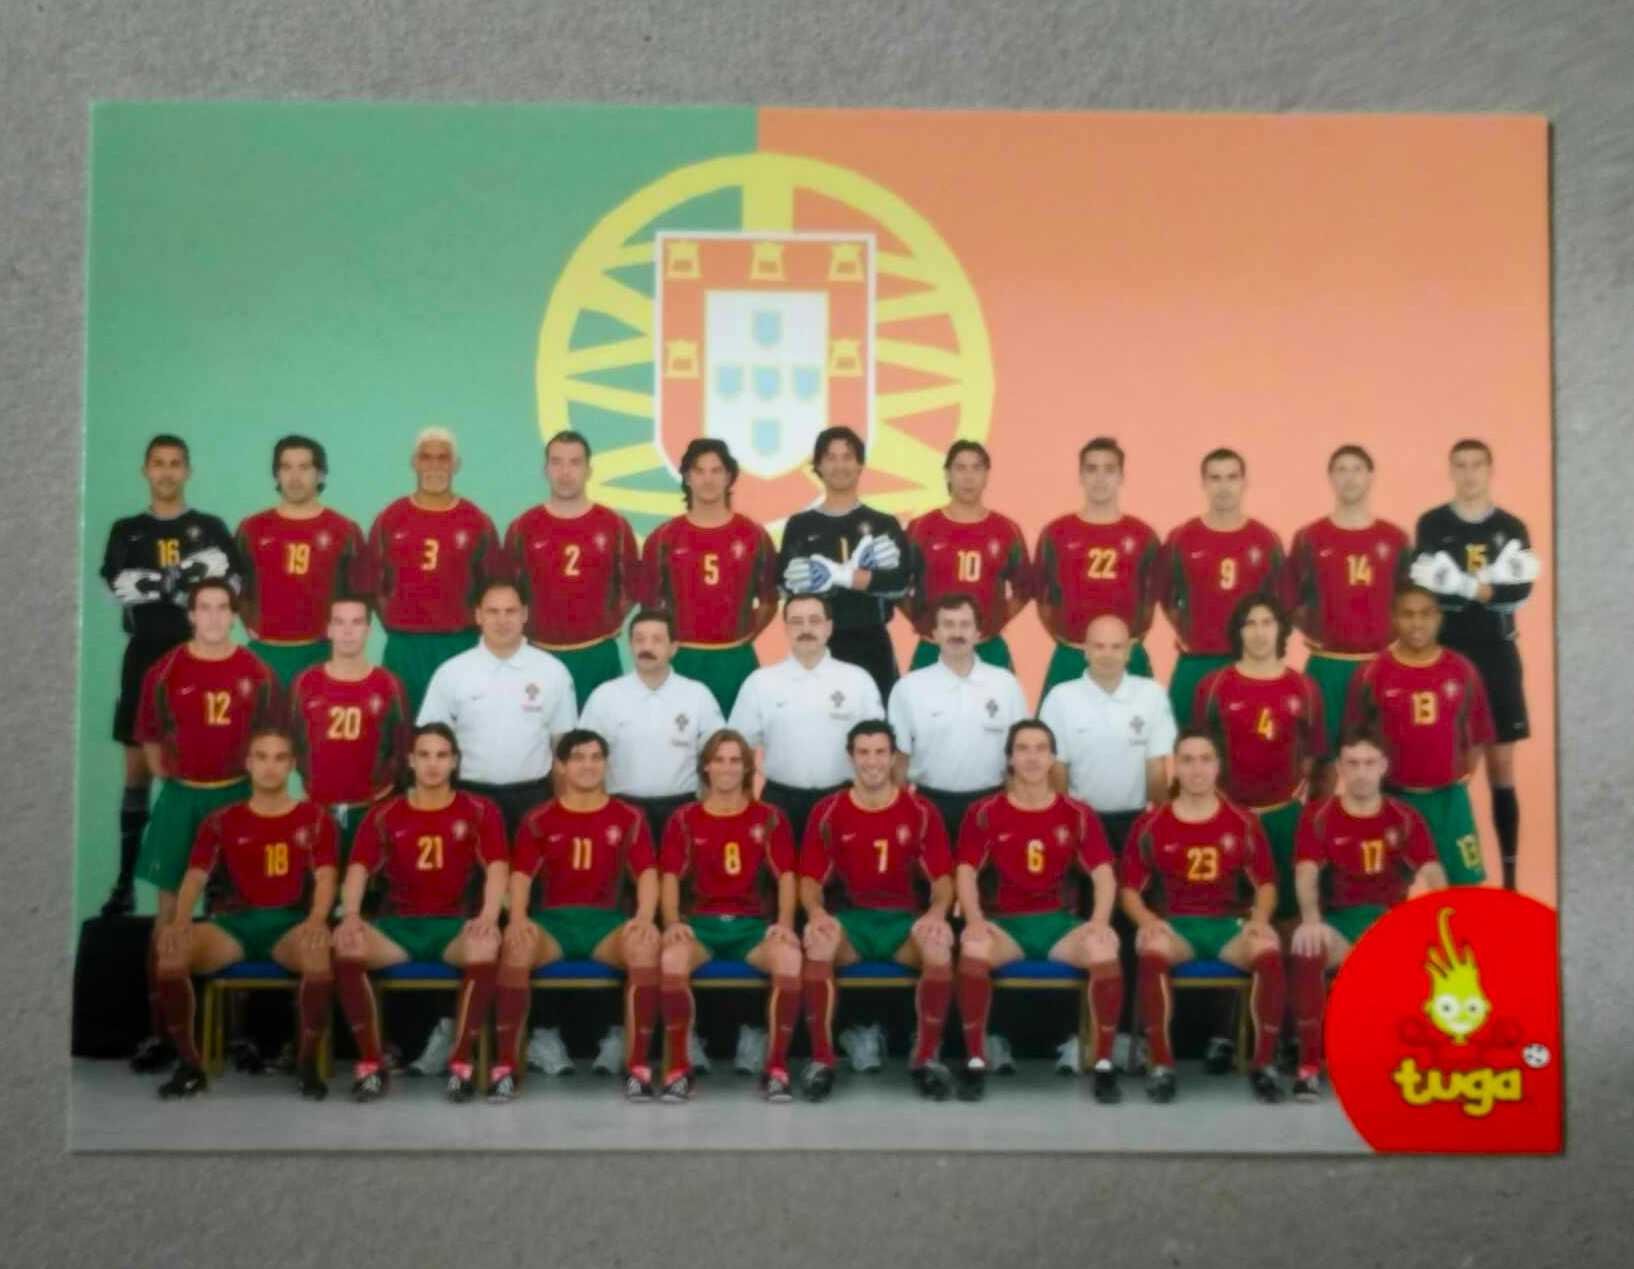 Postal CTT Apoio Seleção Nacional no Campeonato Mundial Futebol 2002